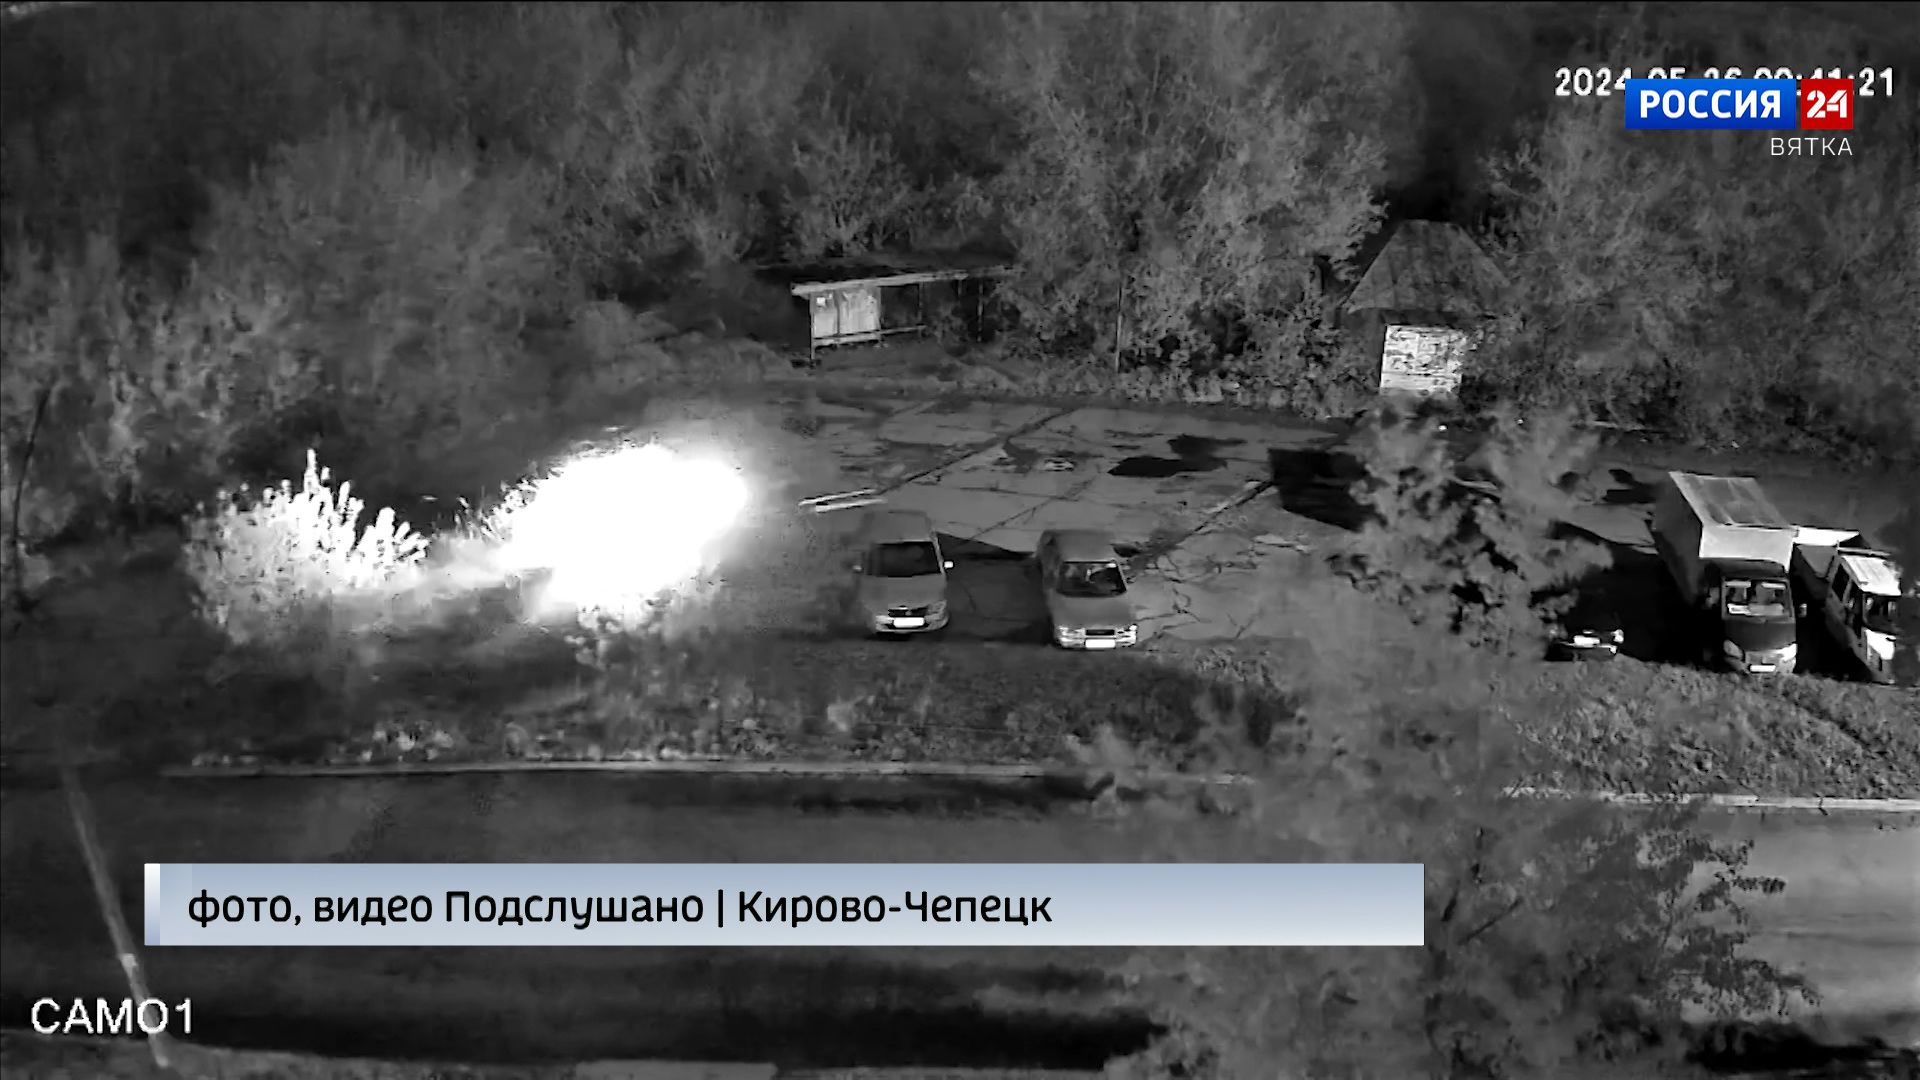 Взрывом автомобиля закончилась ночная погоня в Кирово-Чепецке